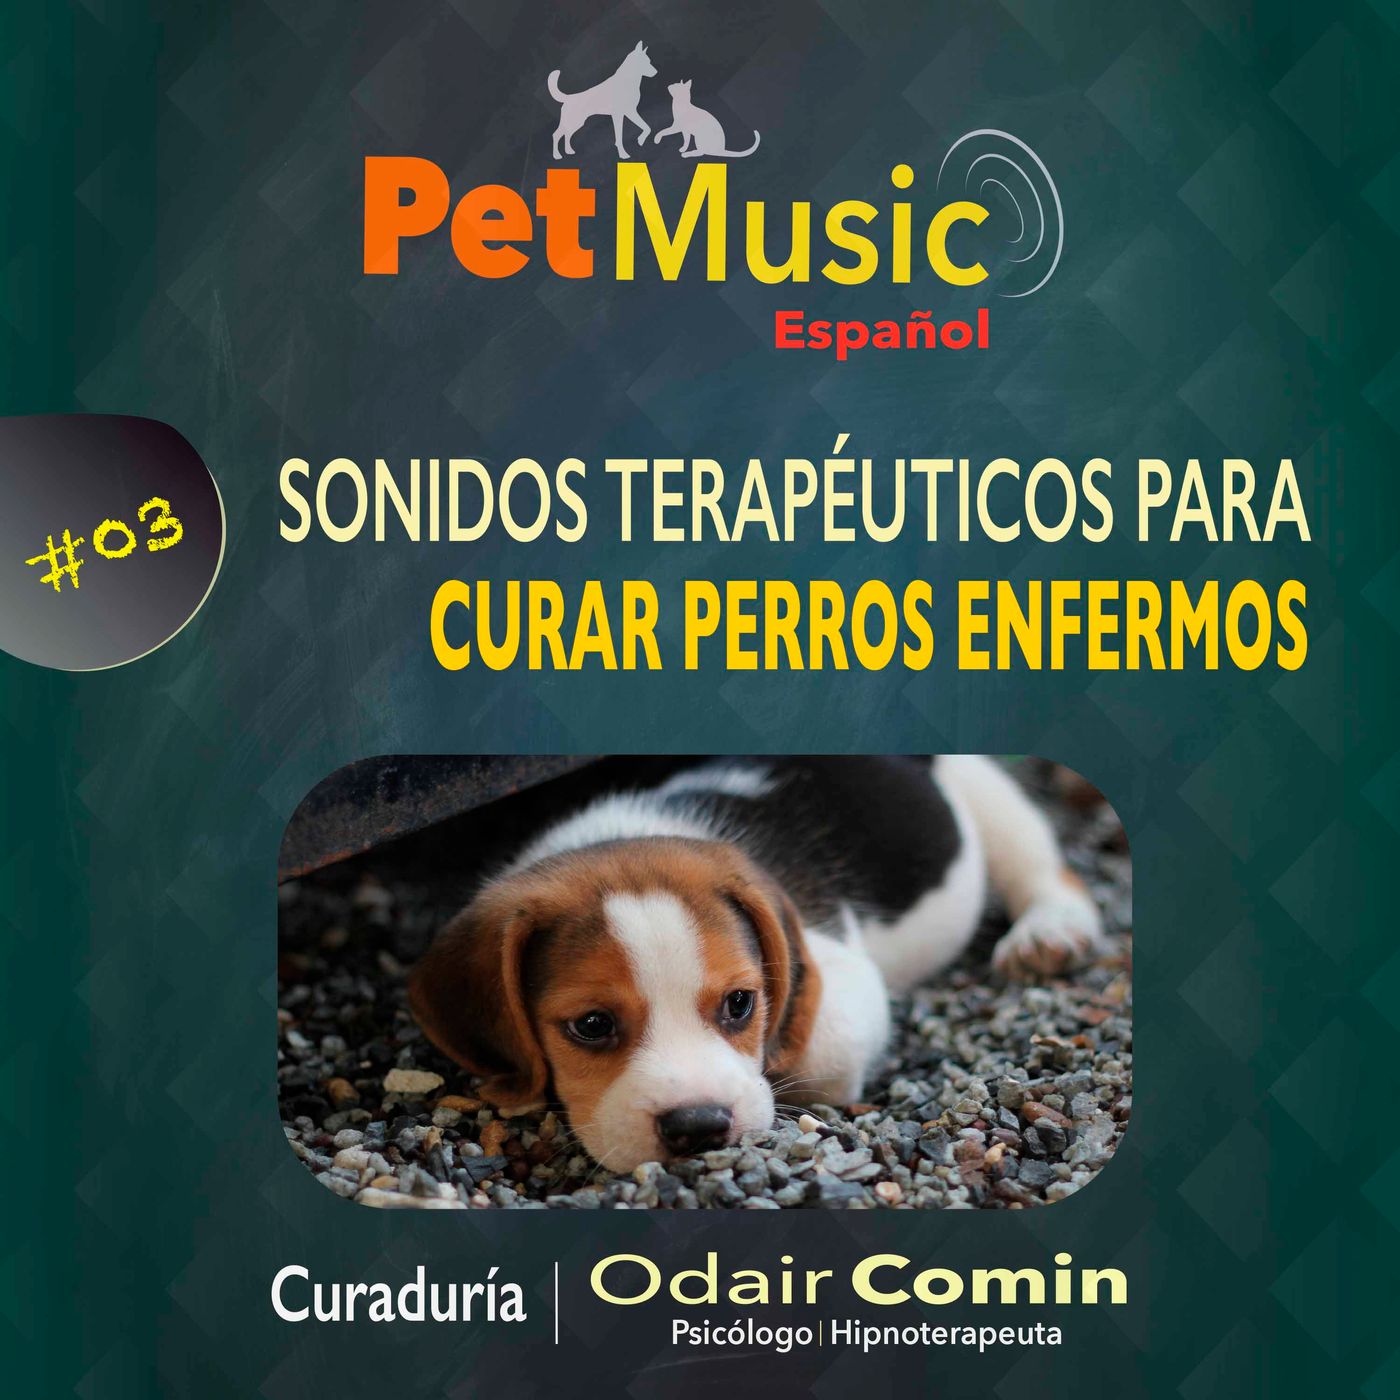 #03 Sonidos Terapéuticos para Curar Perros Enfermos | PetMusic